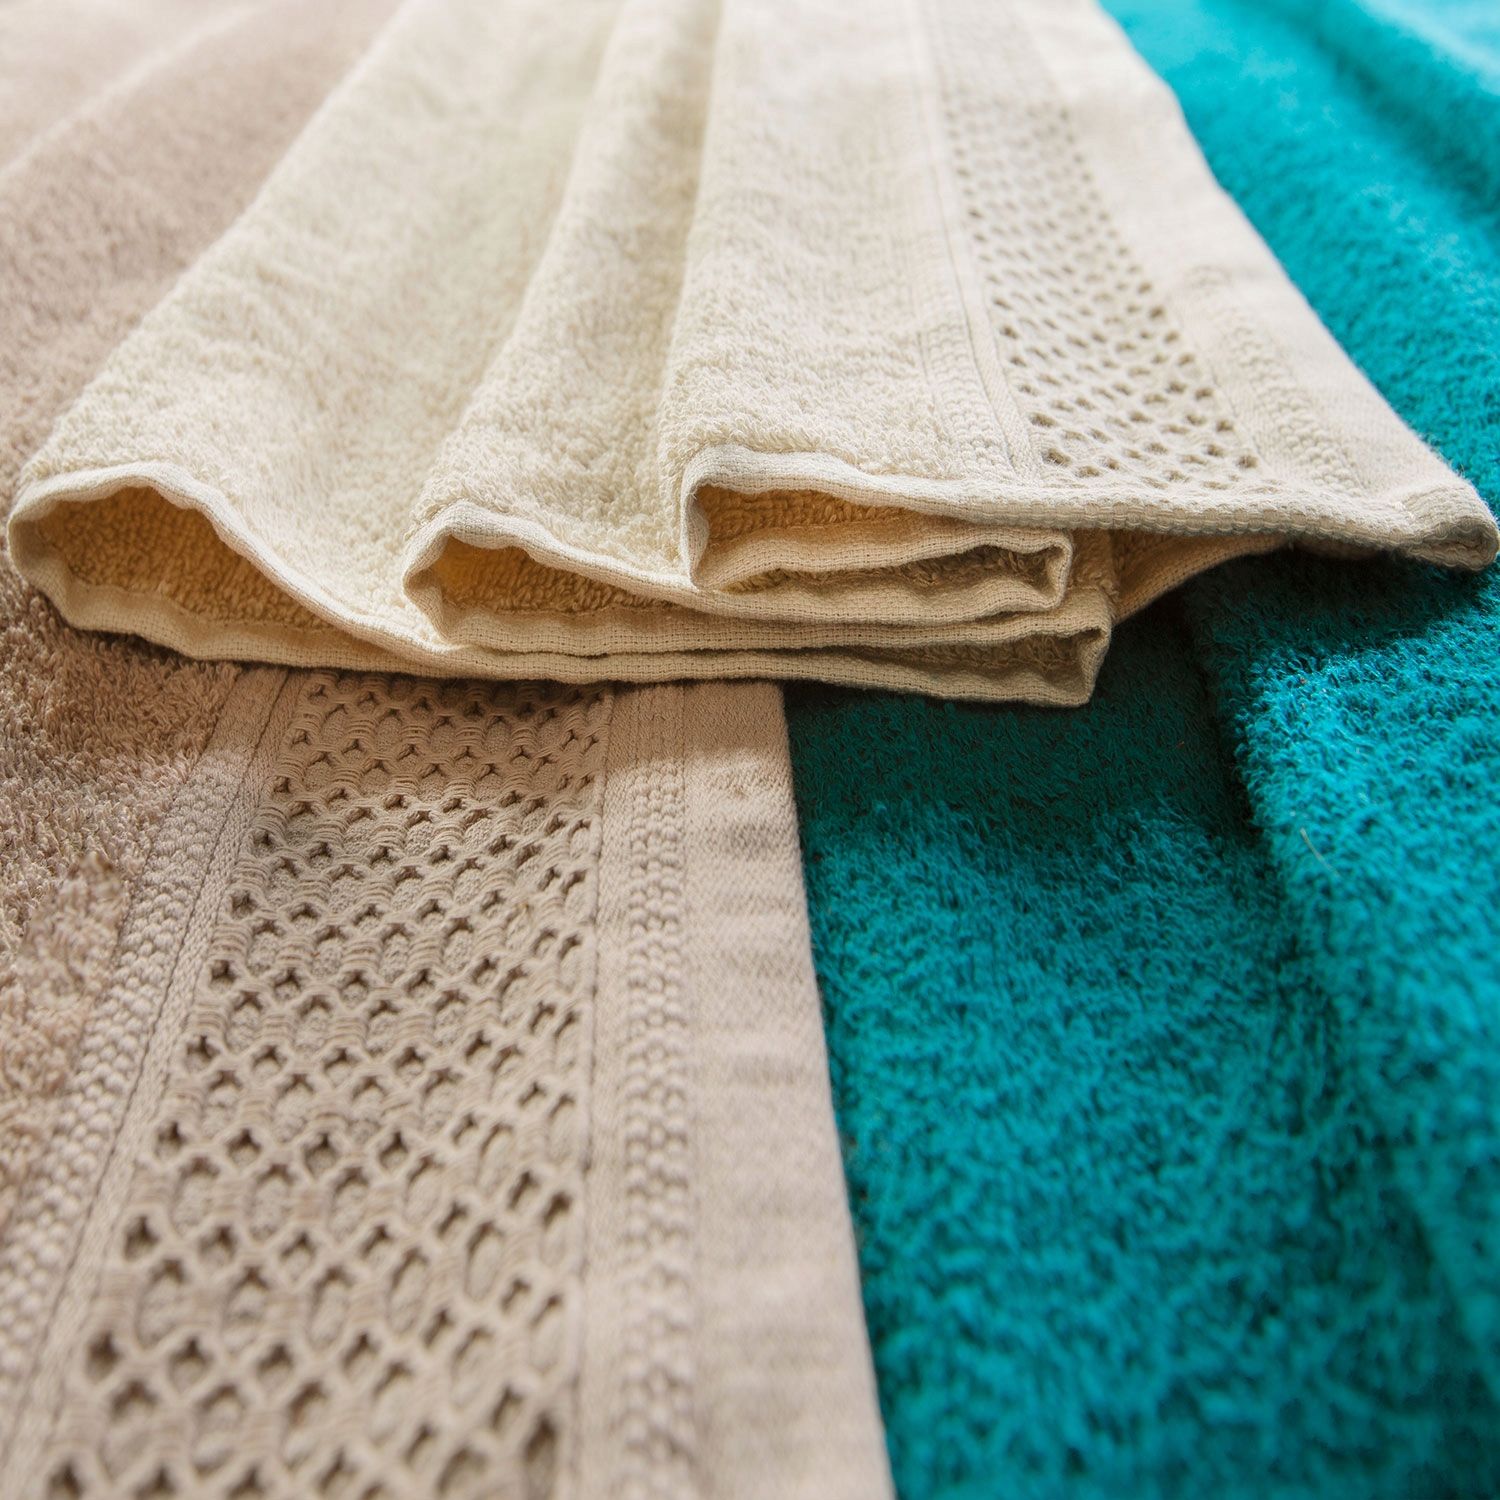 Ręcznik Solano 50x90 niebieski frotte 100% bawełna